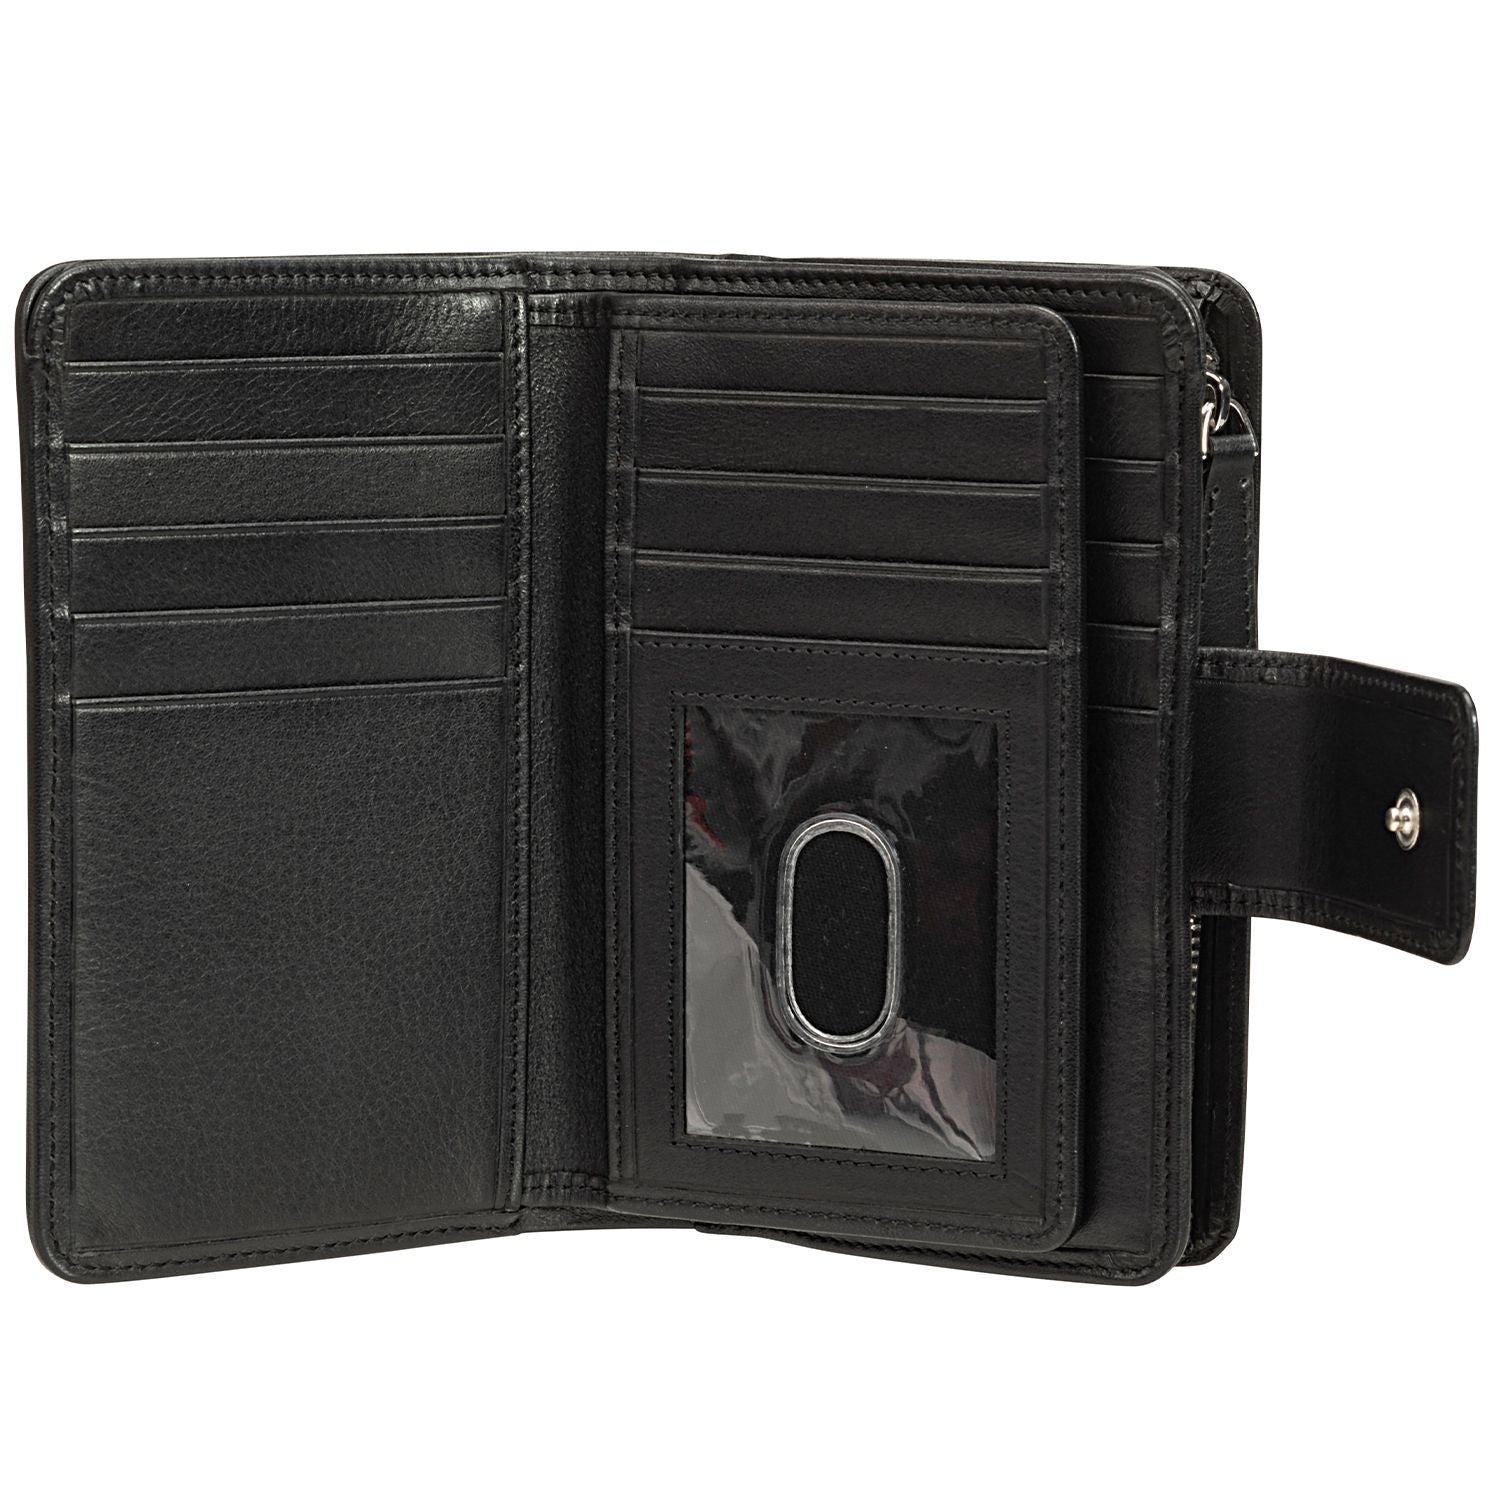 Mancini BASKET WEAVE RFID Secure Medium Clutch Wallet